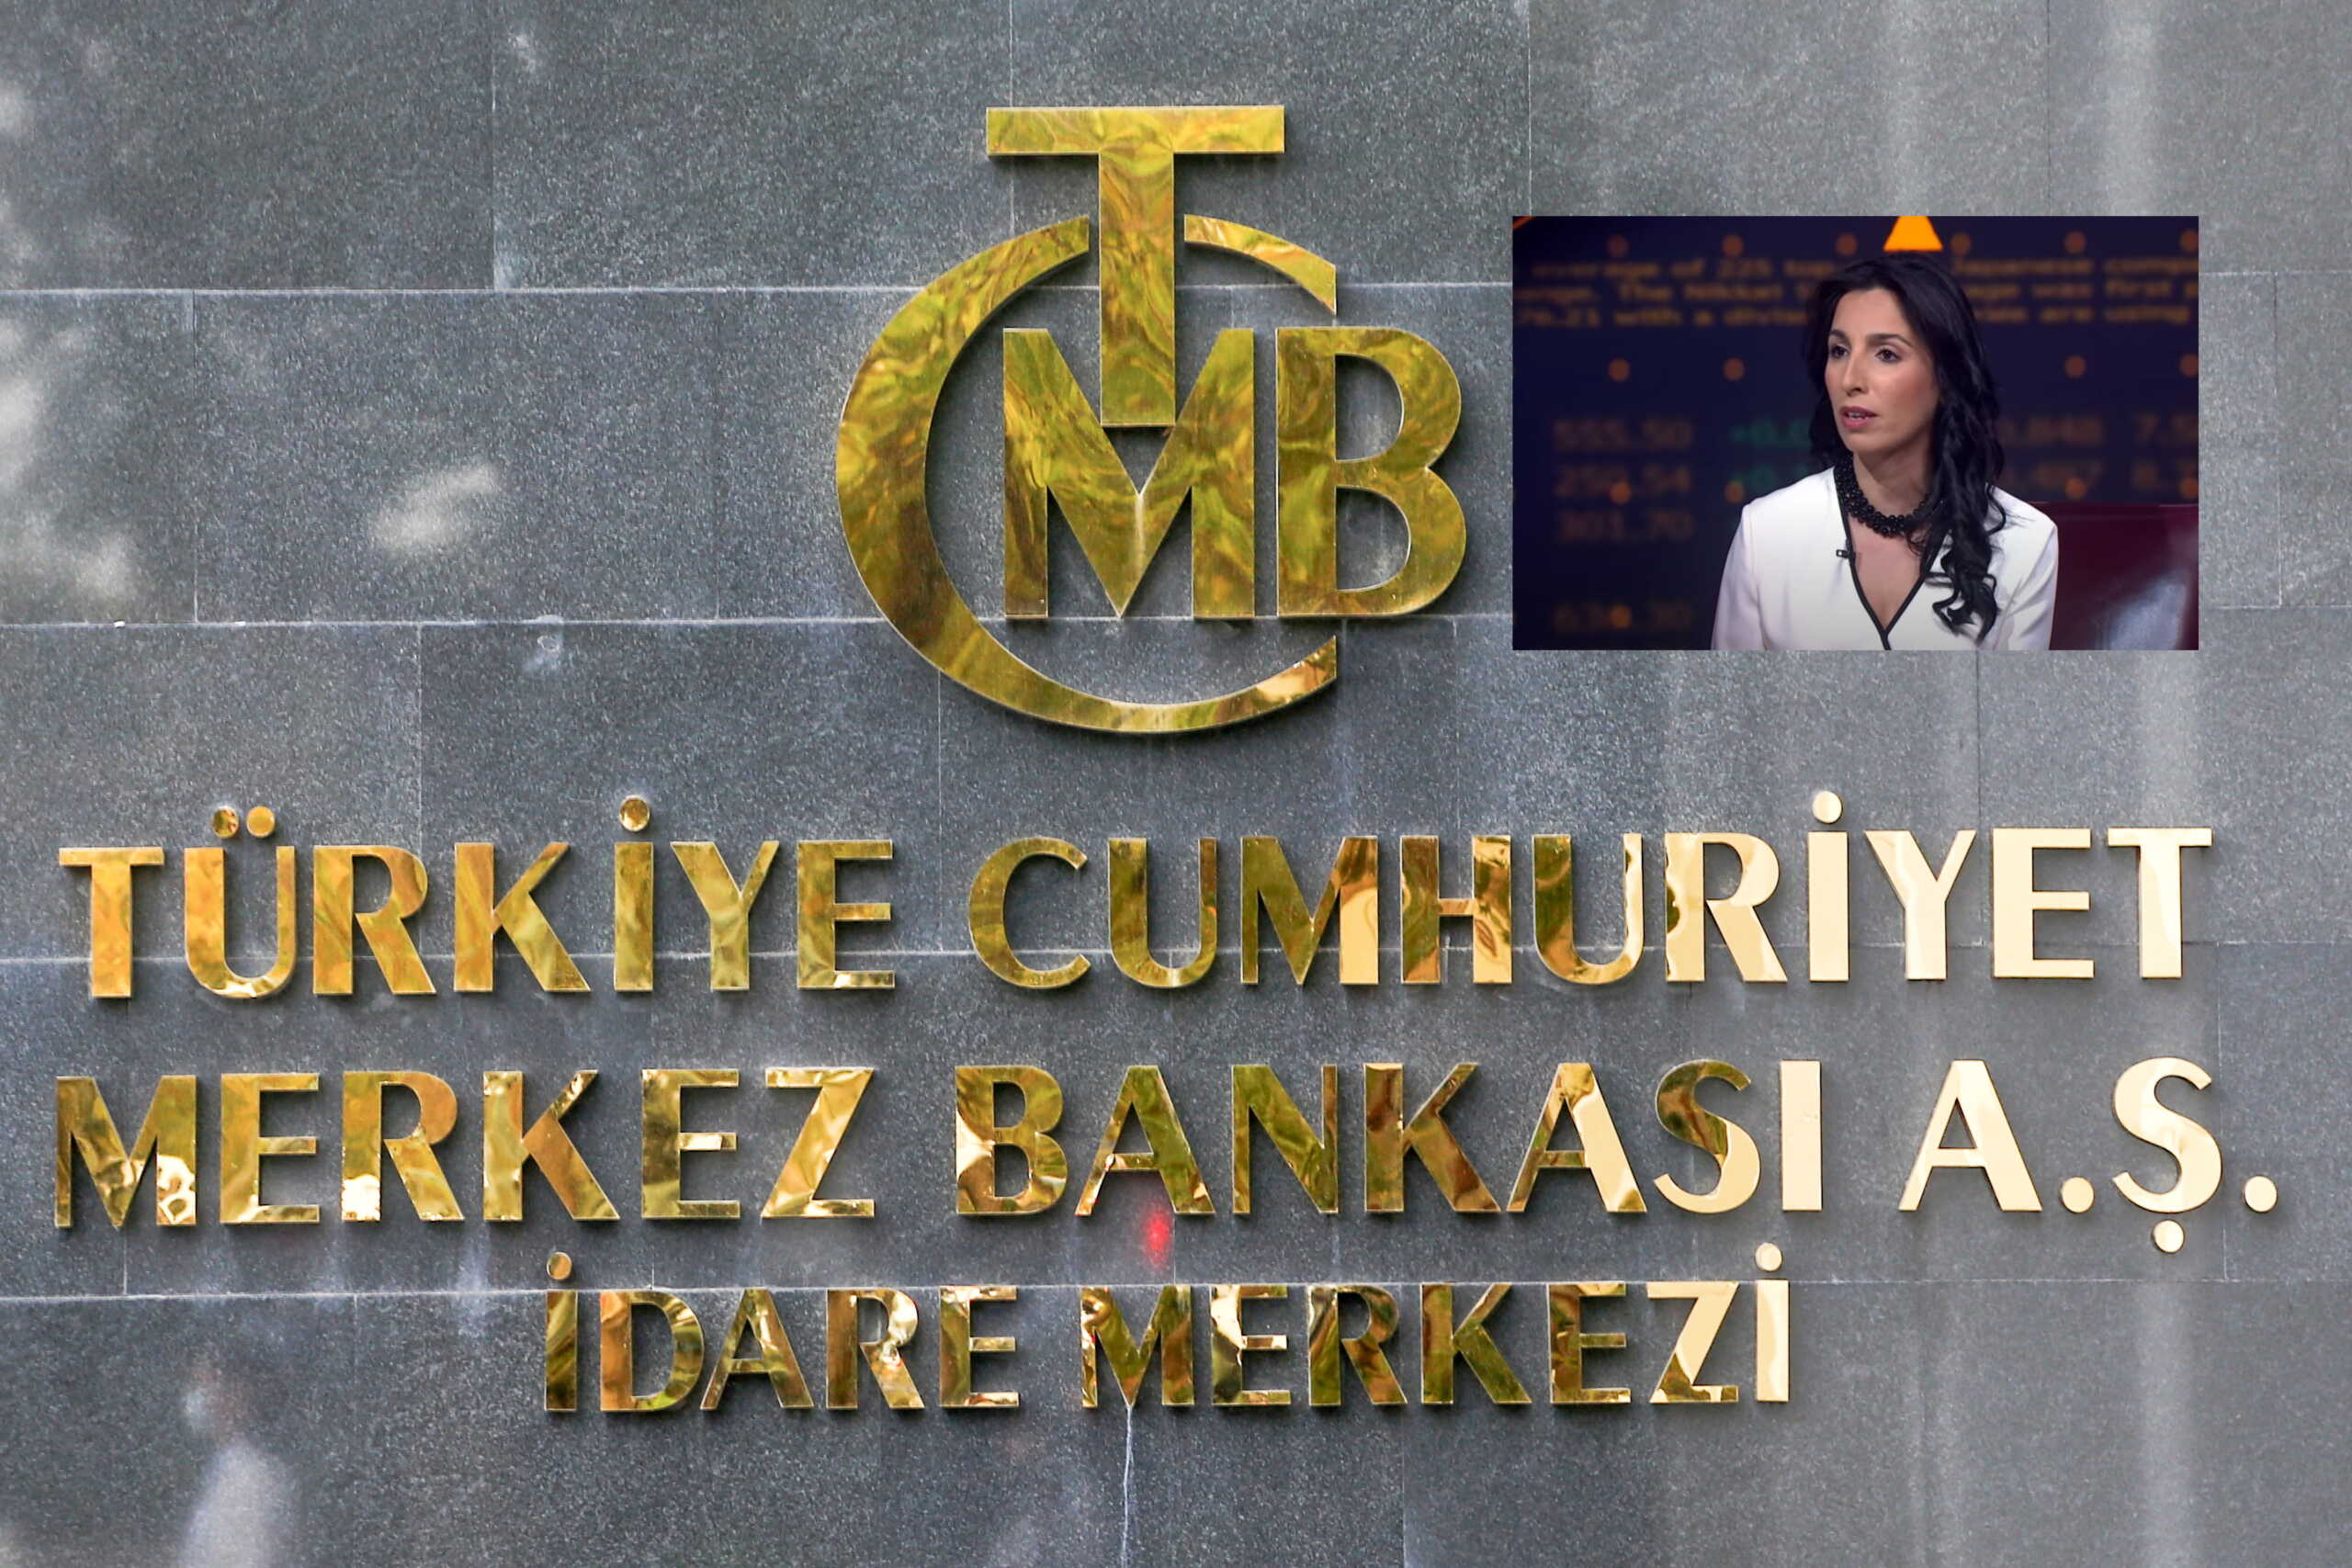 Κεντρική Τράπεζα Τουρκίας: Ο Ερντογάν εξετάζει το διορισμό της πρώτης γυναίκας ως επικεφαλής